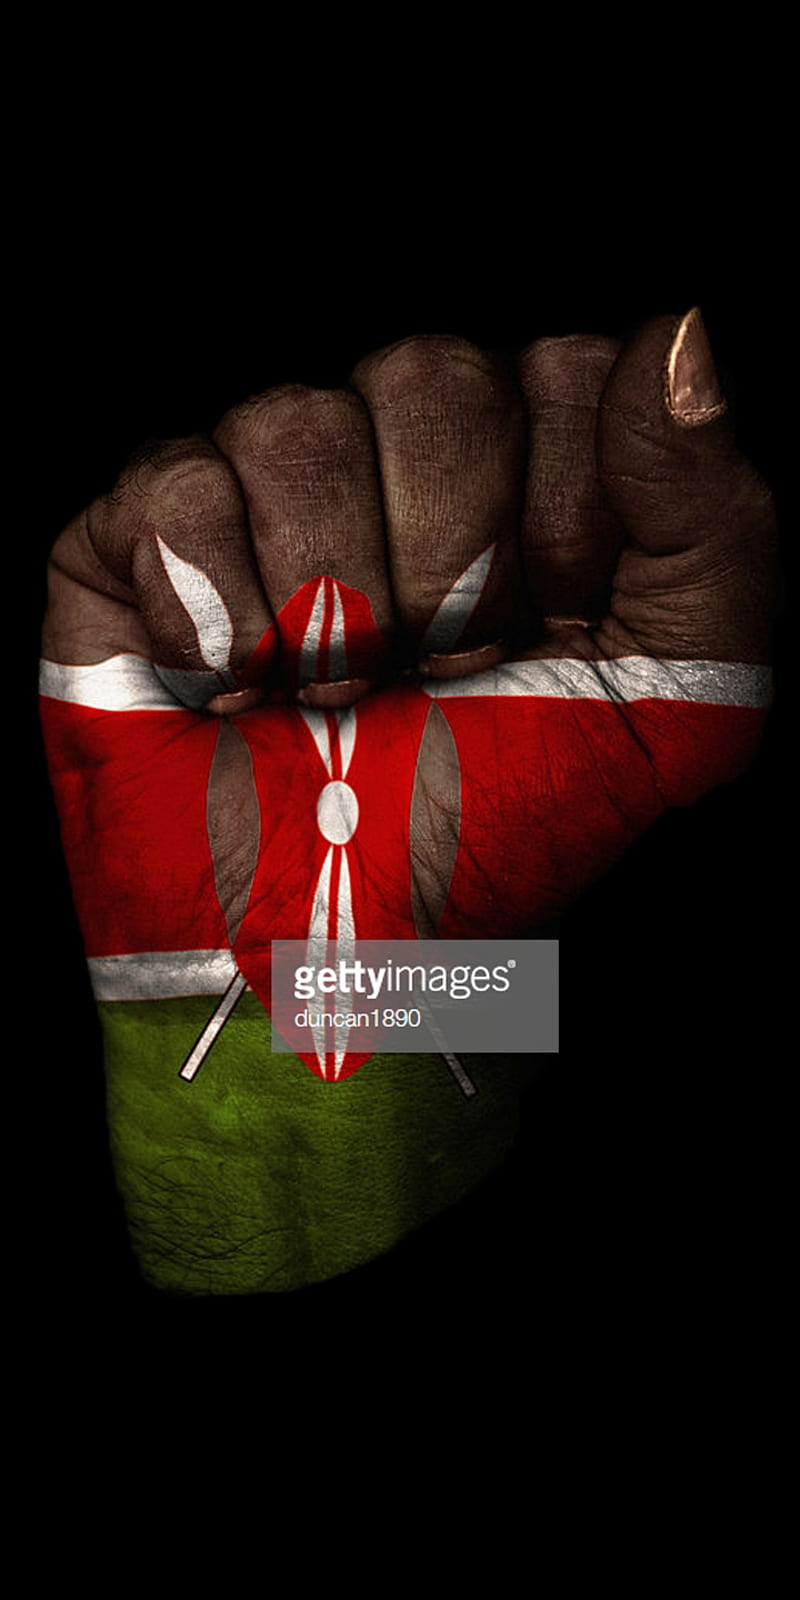 Kenya Wallpaper - Jean Paul Gaultier